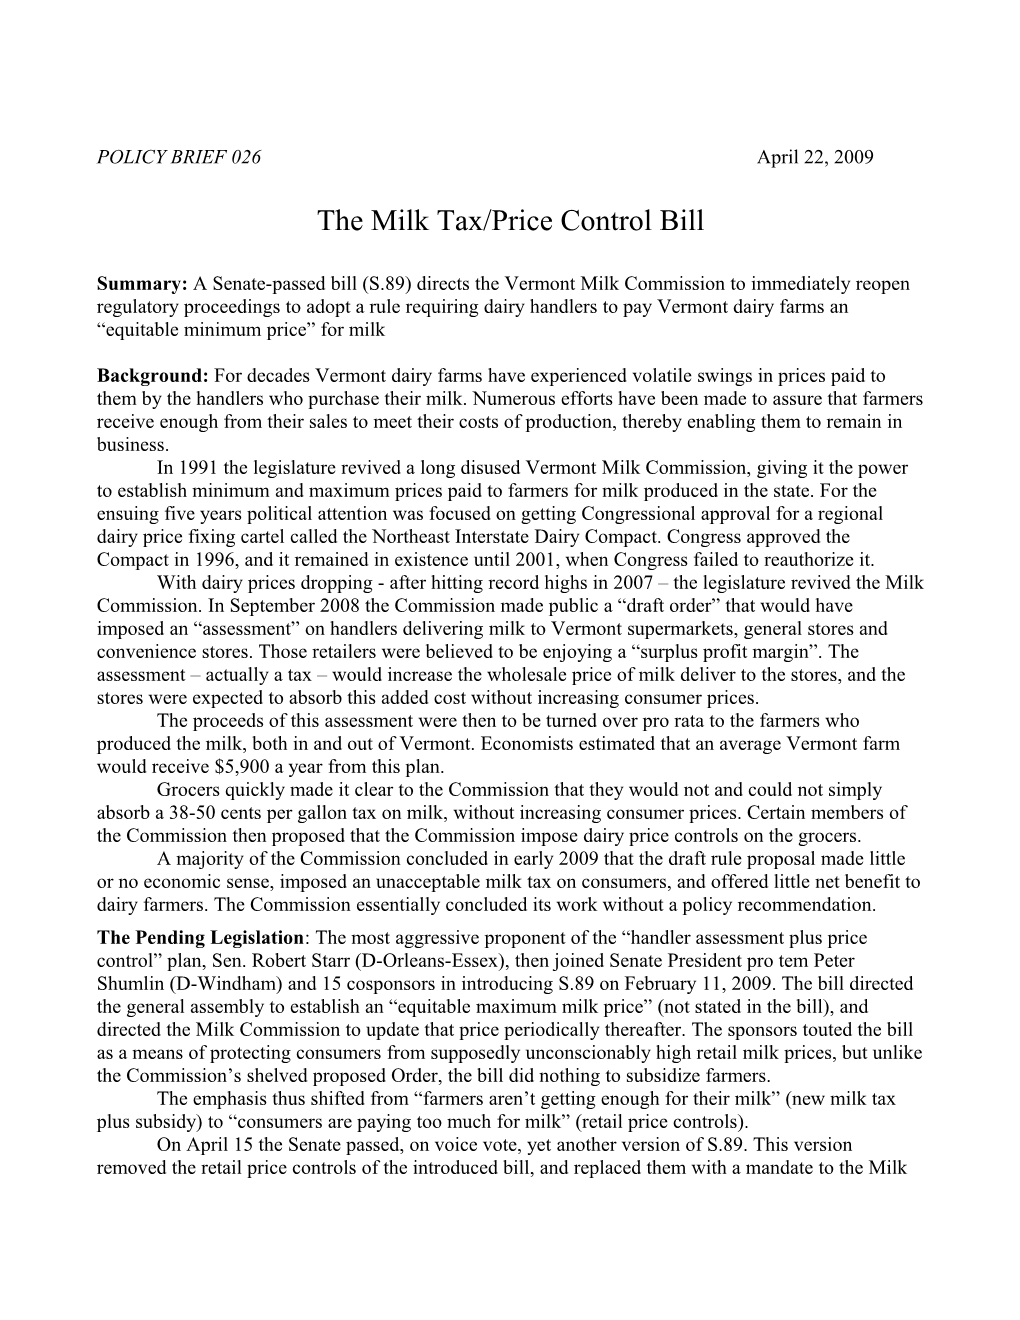 The Milk Tax/Price Control Bill